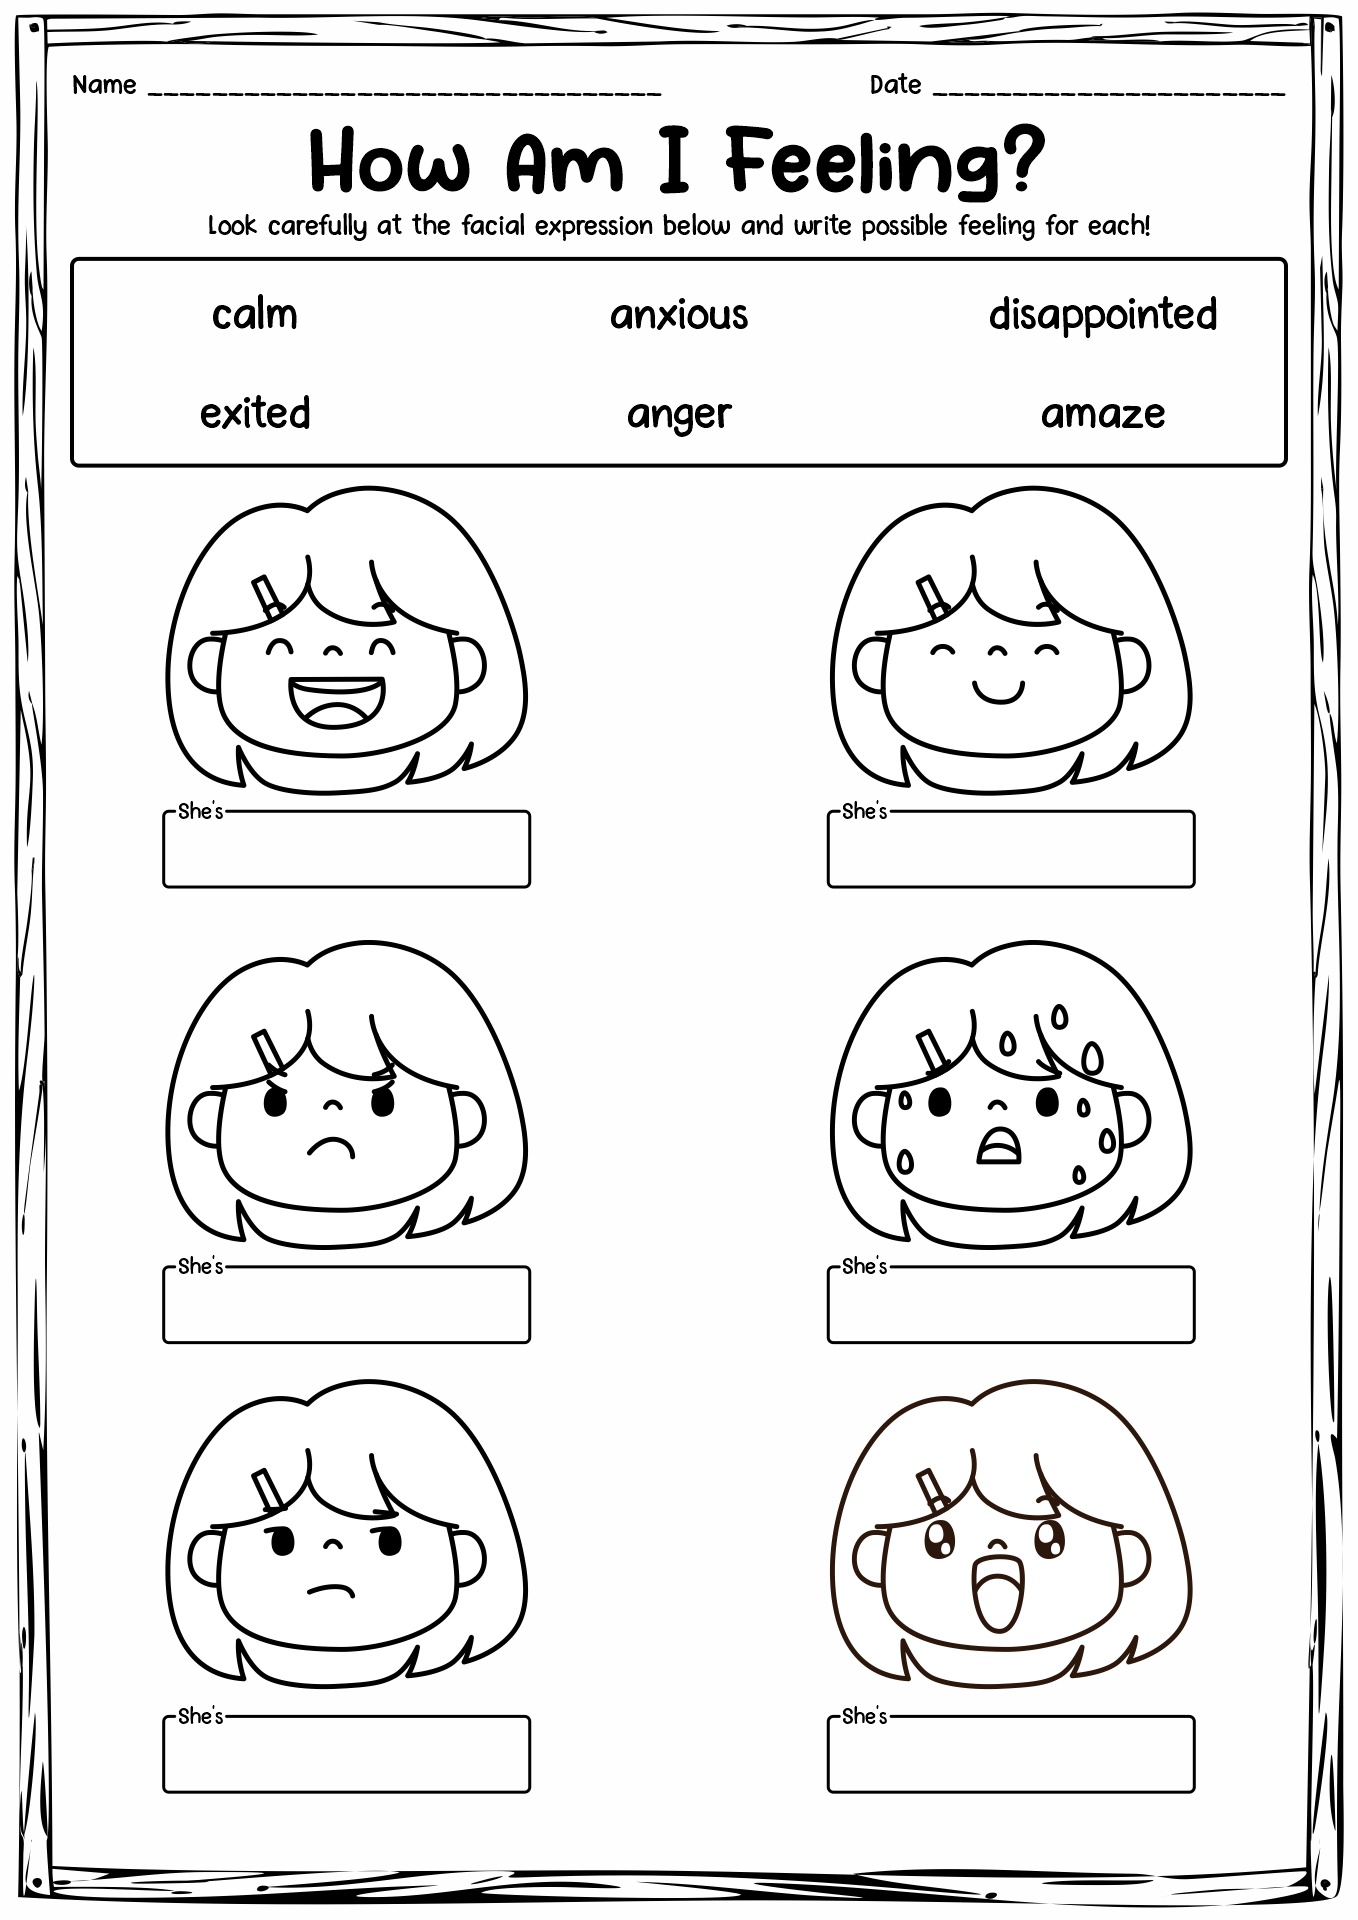 Facial Expression Worksheet for Kids Image